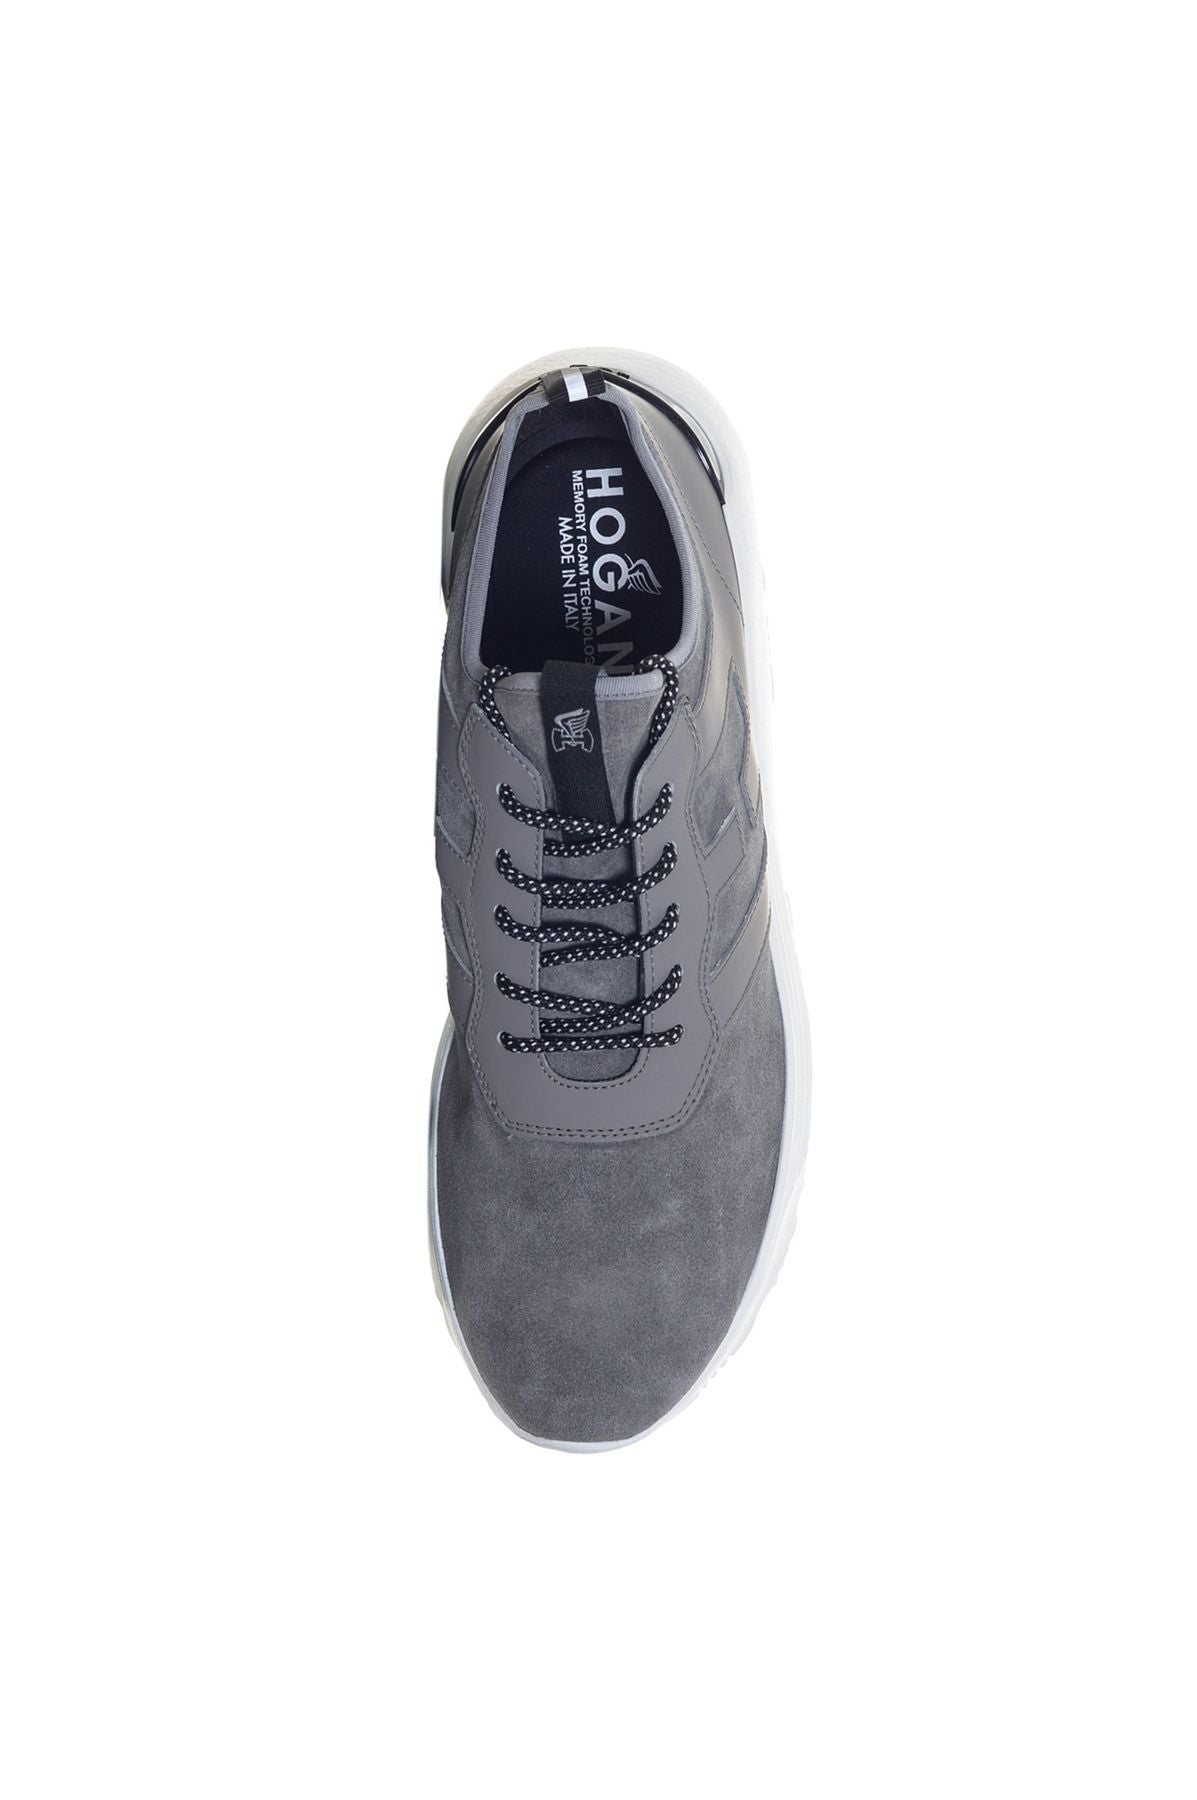 HOGAN Spring/Summer Sneakers hxm4430cm52n8zb601